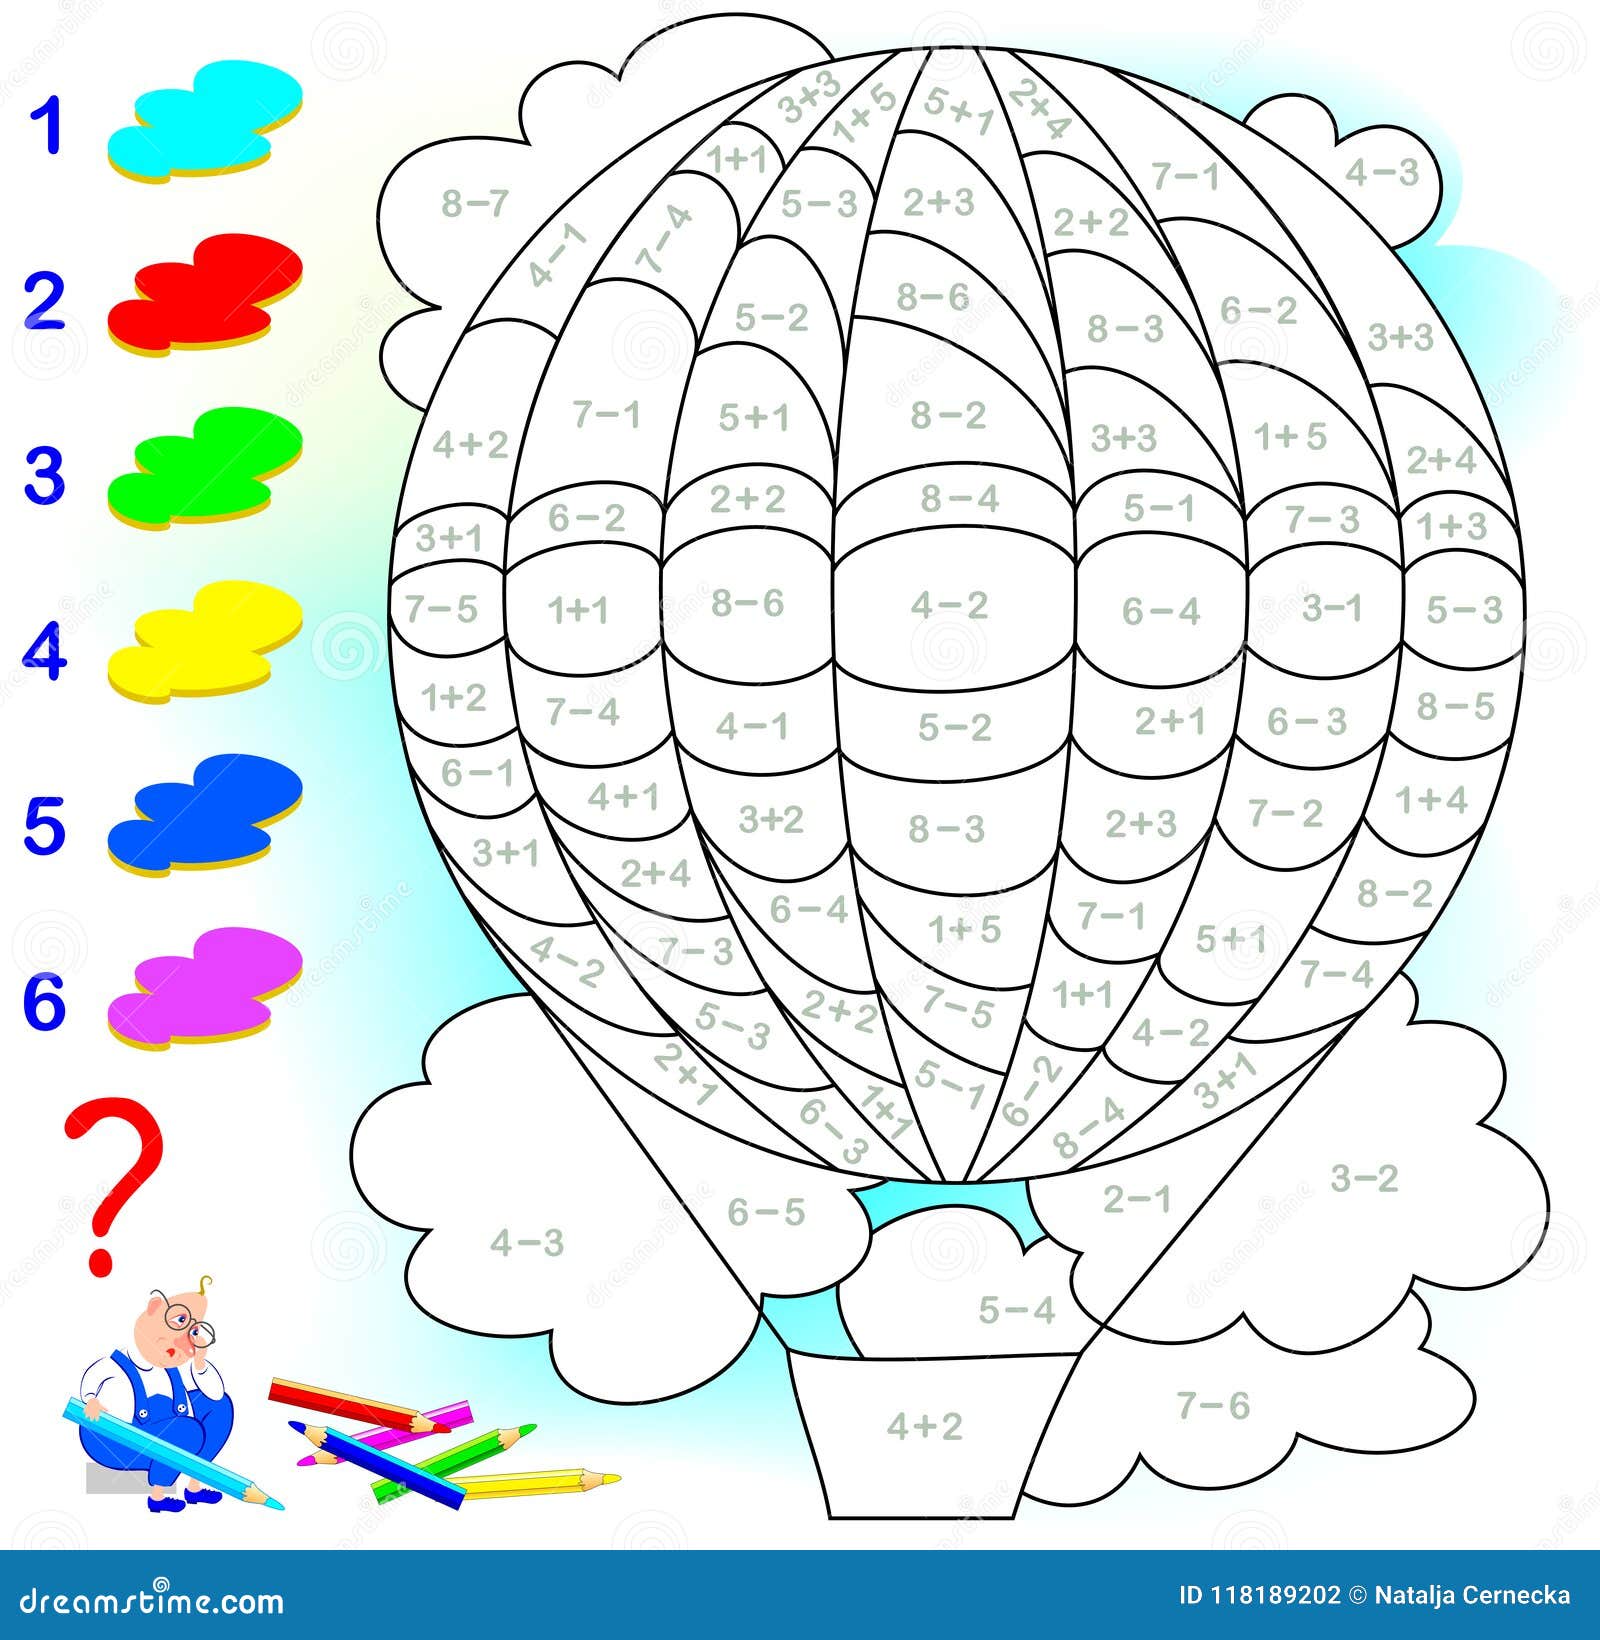 Página para colorir com balão de ar quente dos desenhos animados. colorir  por números. jogo de matemática para crianças.